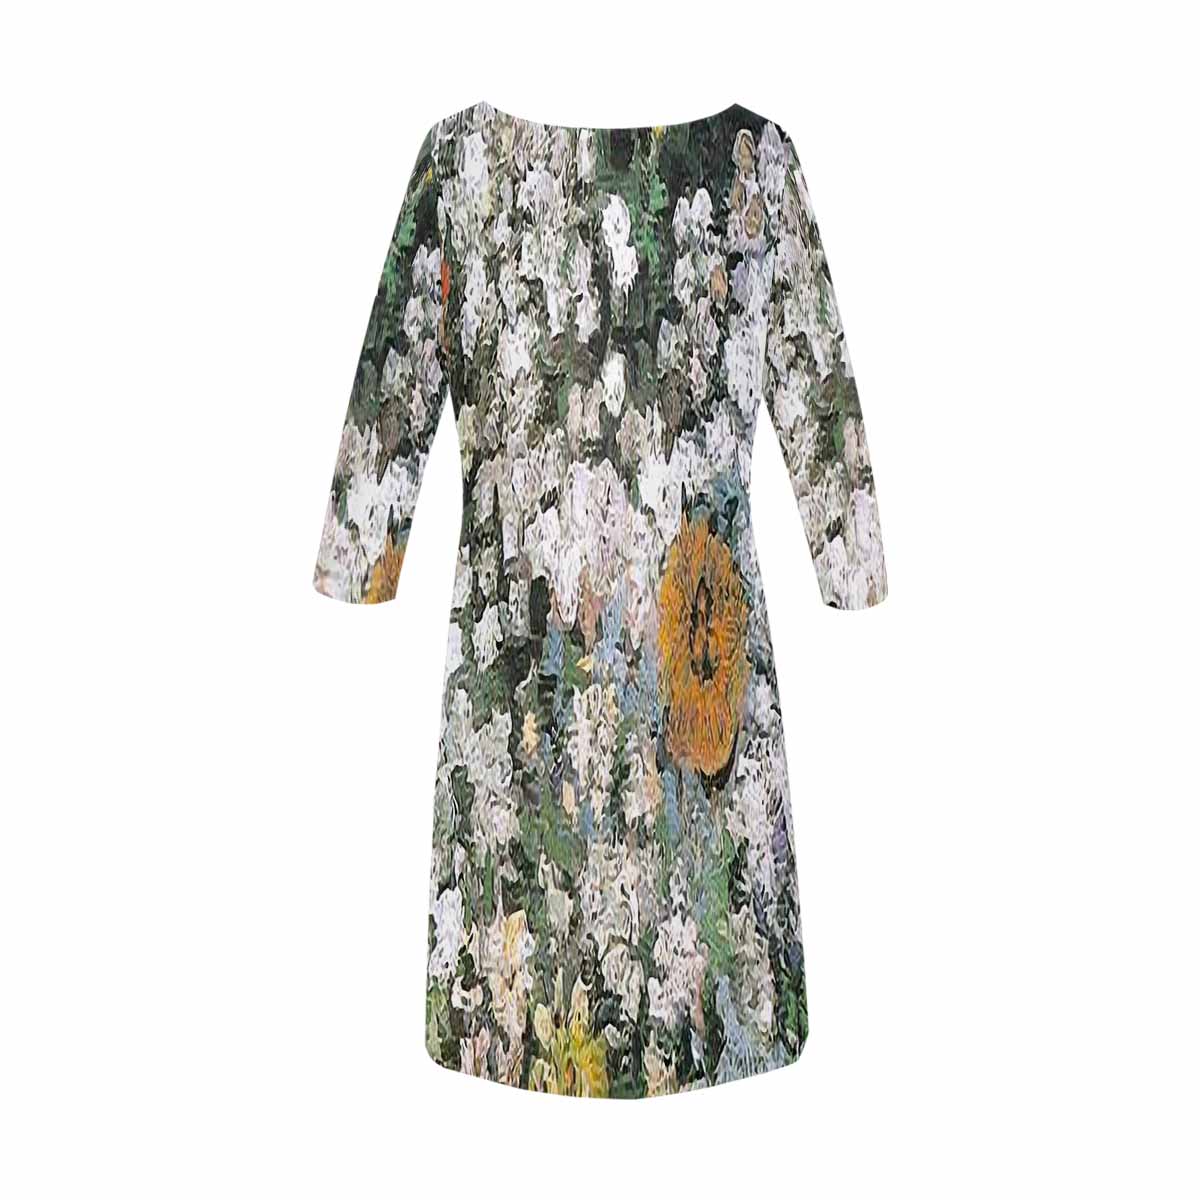 Vintage floral loose dress, model D29532 Design 07